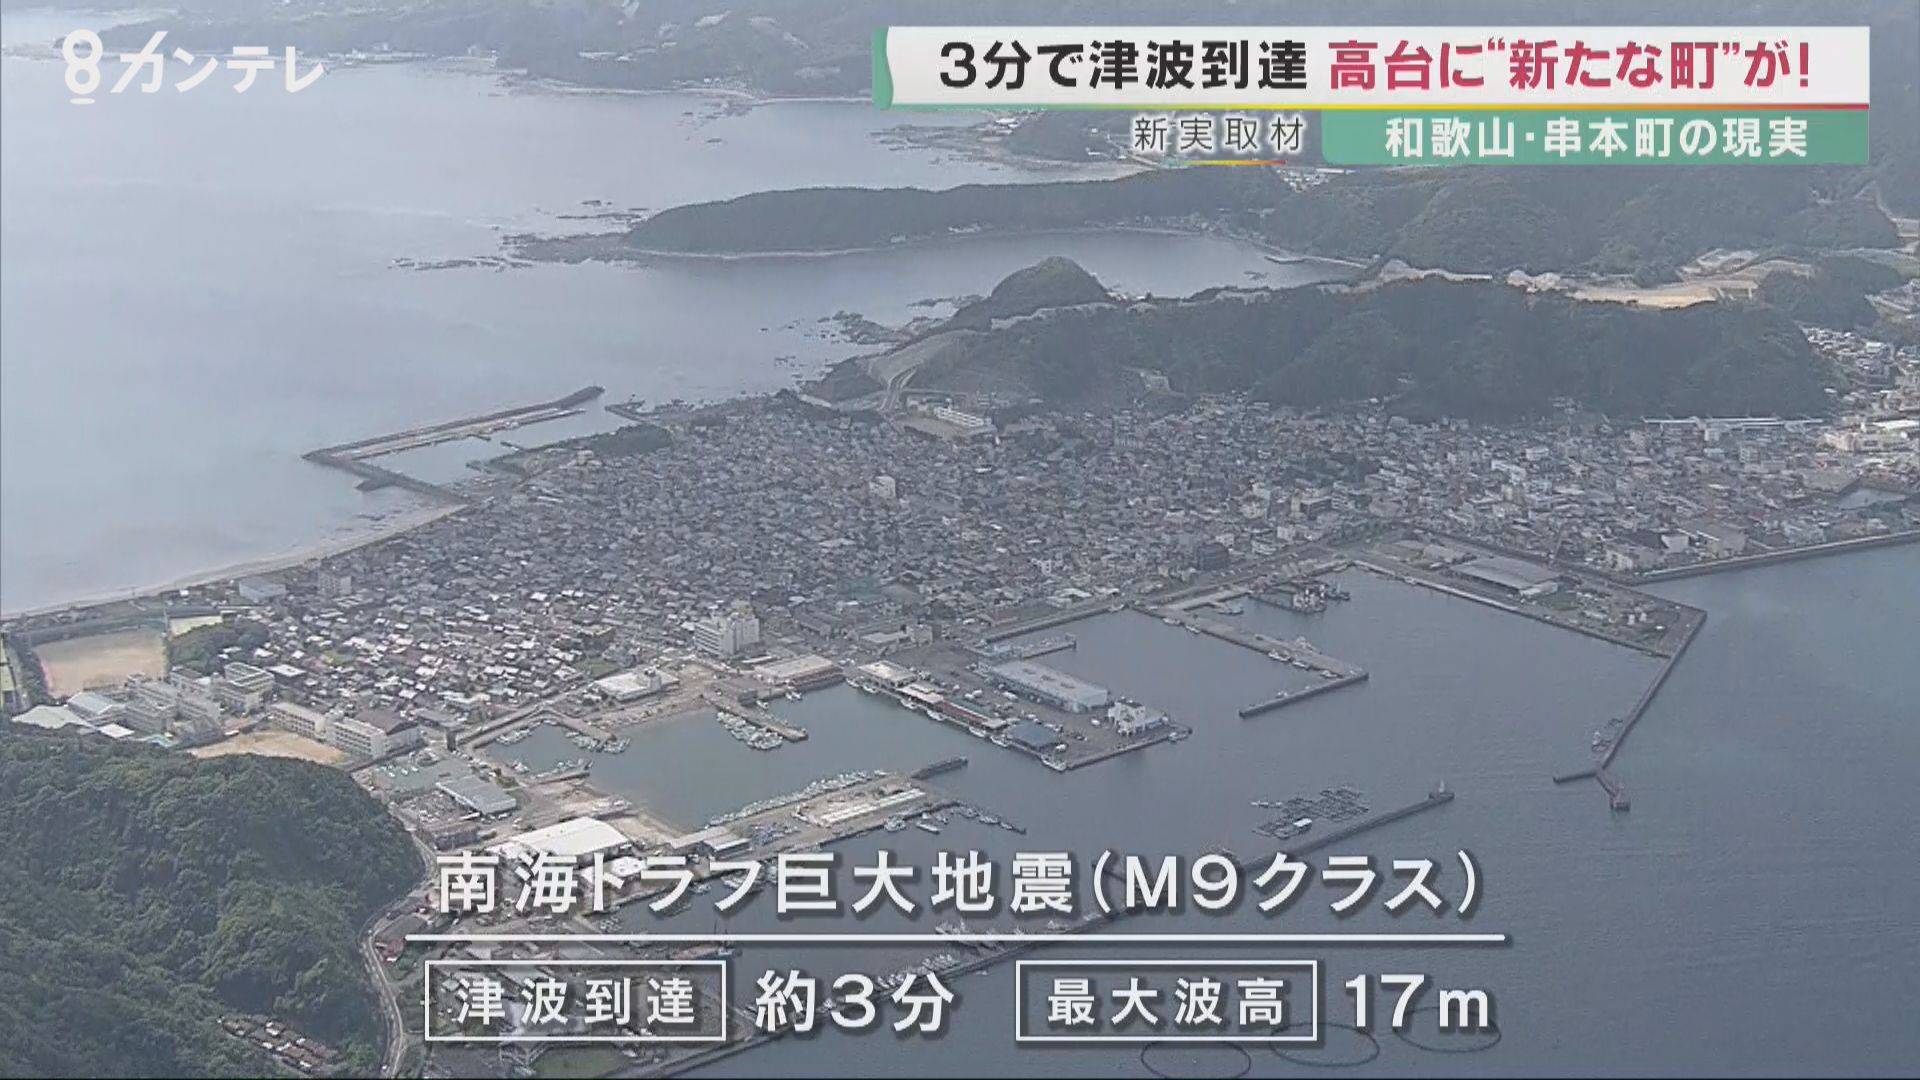 南海トラフ地震では3分で津波到達 和歌山・串本町が進める「高台移転」 一方で避難をあきらめる高齢者も… | 特集 | 報道ランナー | ニュース |  関西テレビ放送 カンテレ